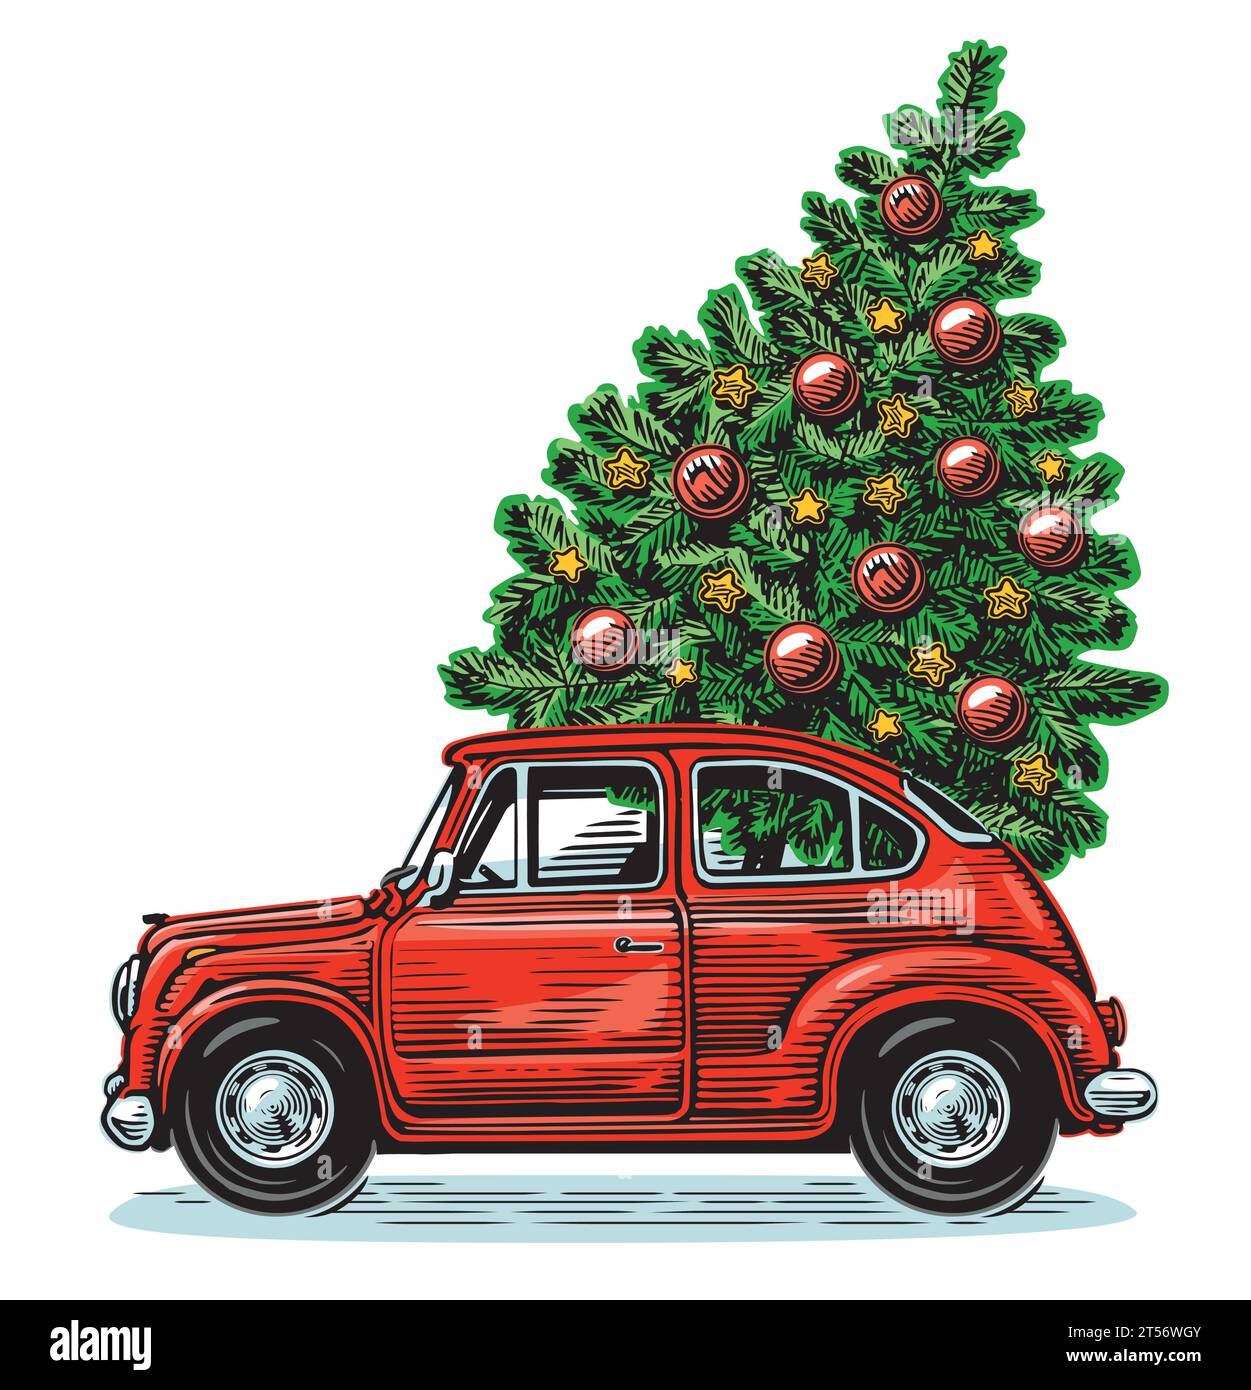 Rotes Retro-Auto und Tannenbaum mit Weihnachtsdekoration. Vektor-Illustration zu Happy Holidays Stock Vektor